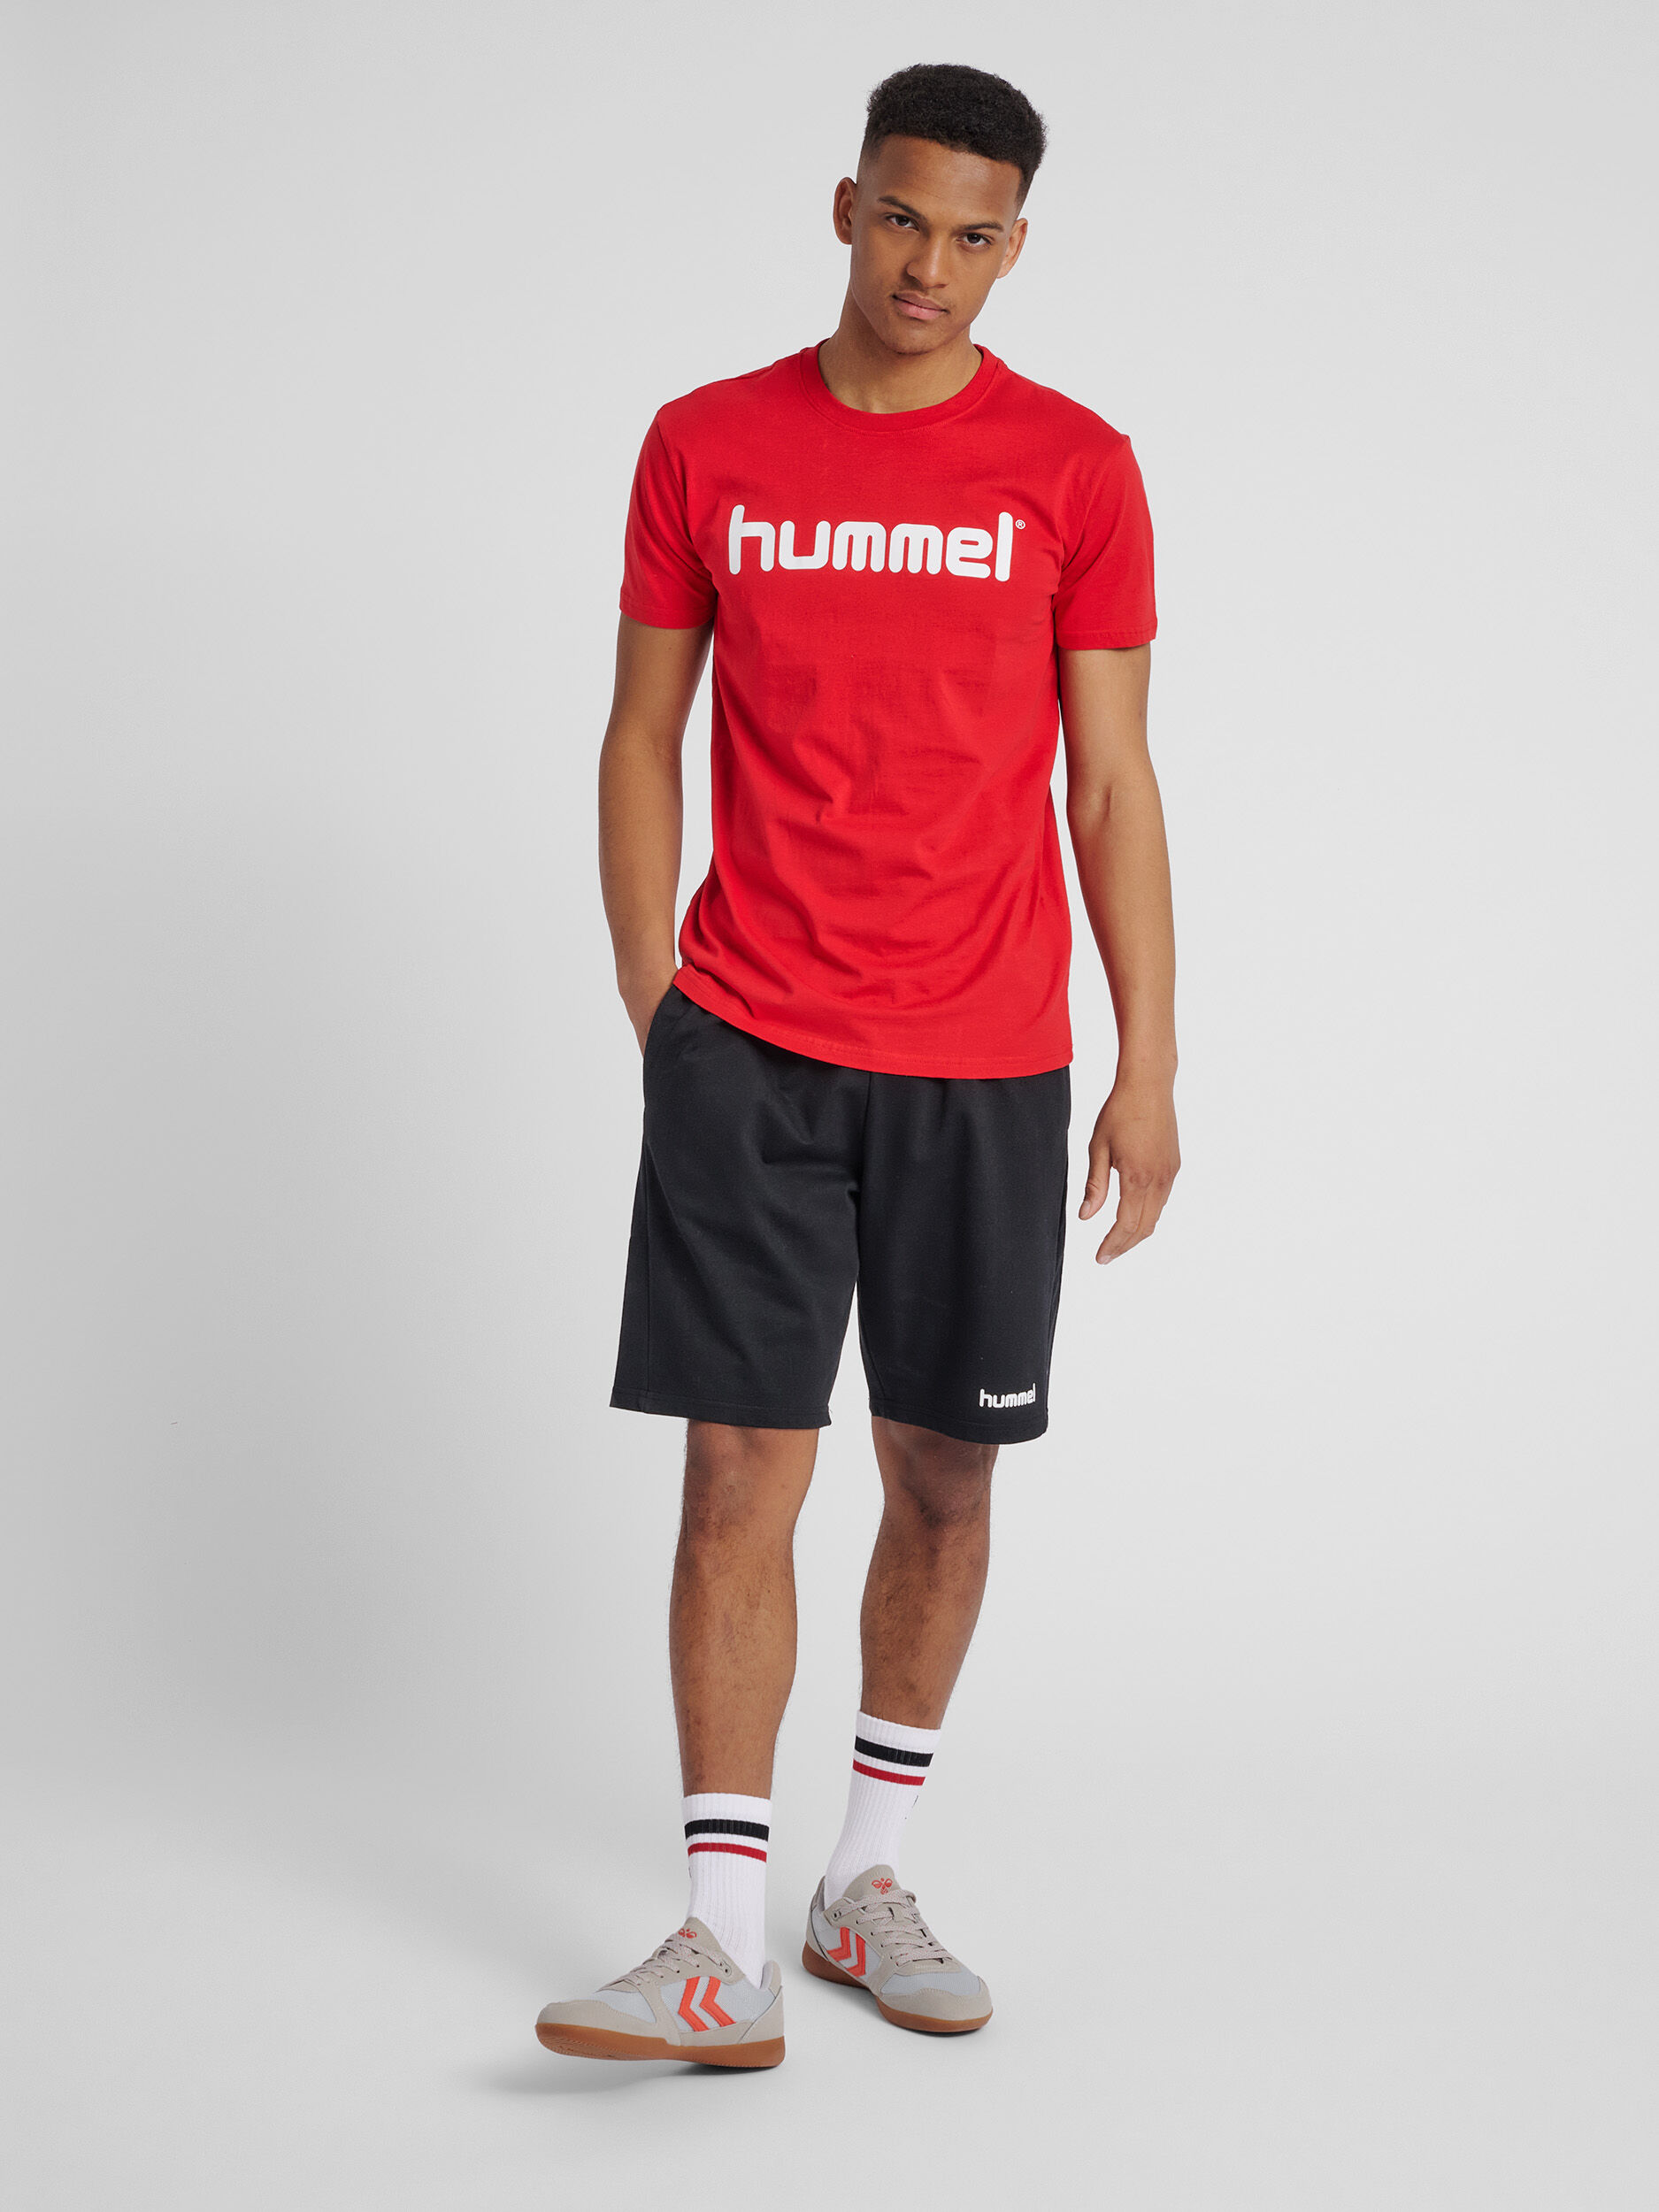 Details about   Hummel Mens Sport Training Casual Cotton Short Sleeve SS T-Shirt Tee Regular Fit 